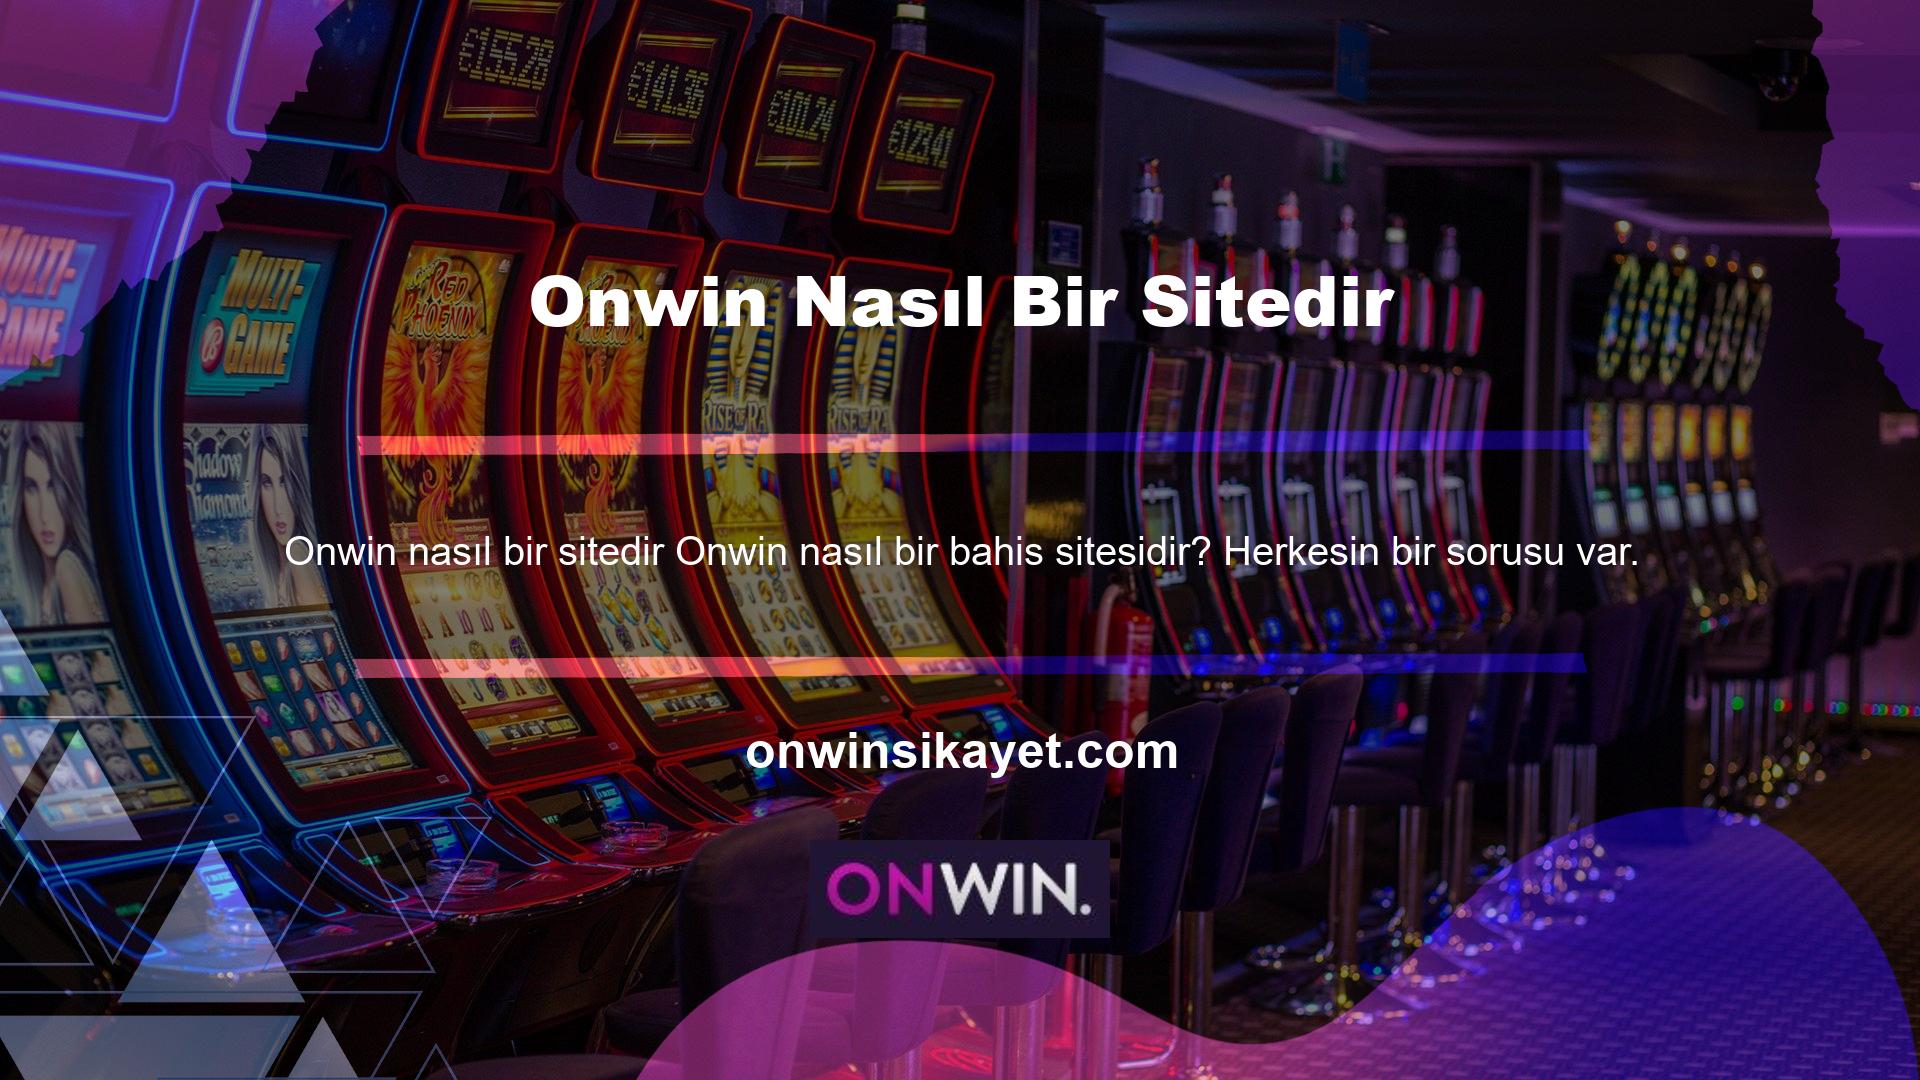 Onwin nasıl bir casino sitesidir? Gördüğünüz gibi, etkili bir tasarım